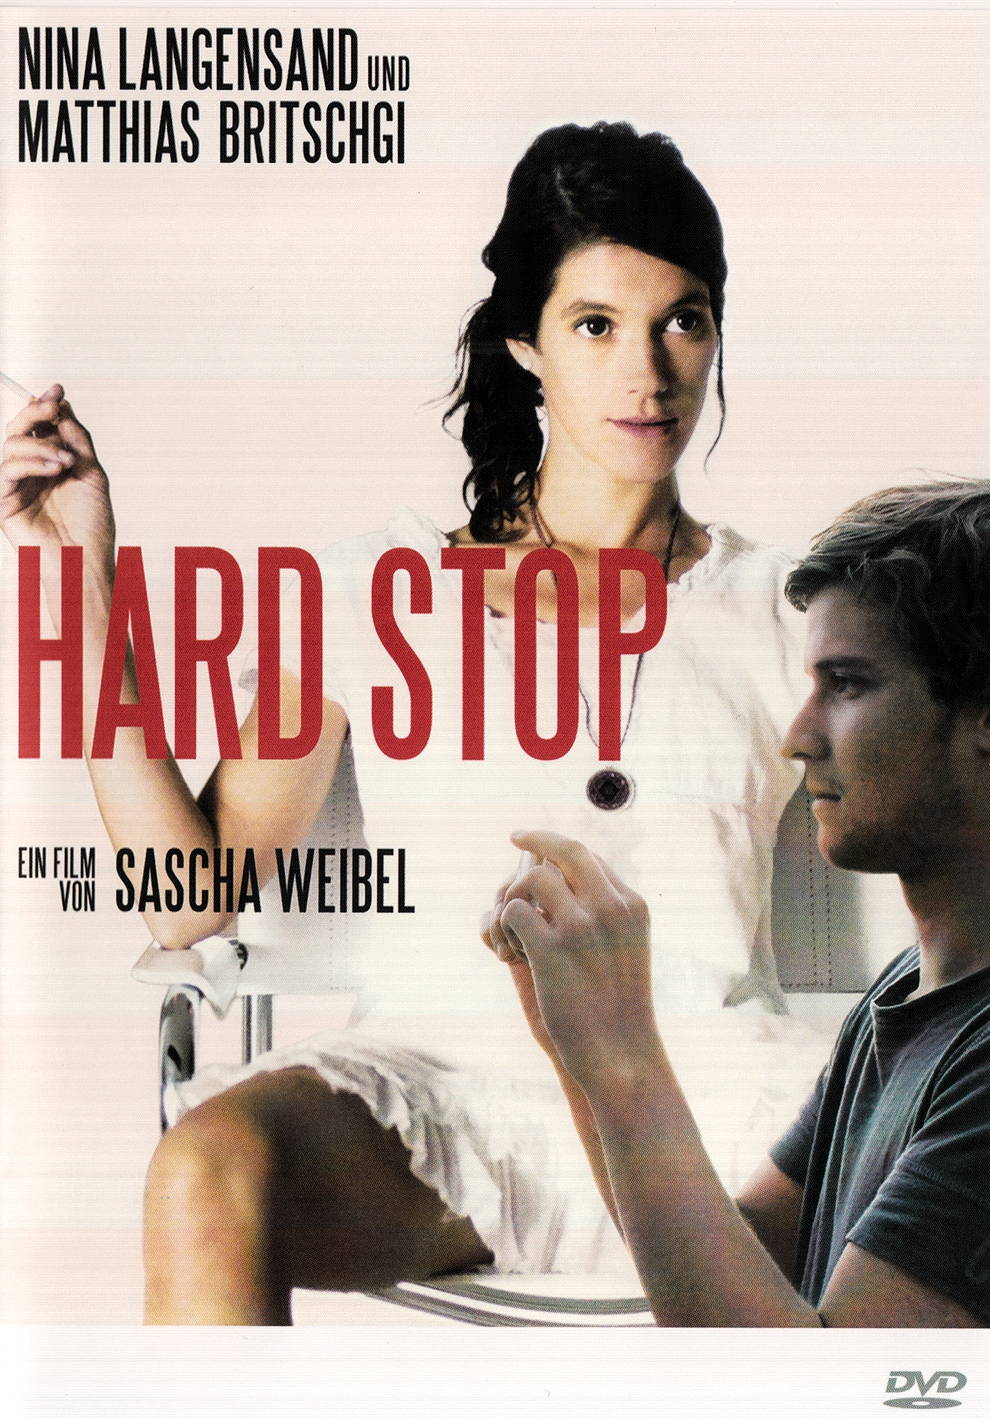 Acheter des Film Hard Stop [DVD] de Sascha Weibel d'occasion | Melando  Suisse